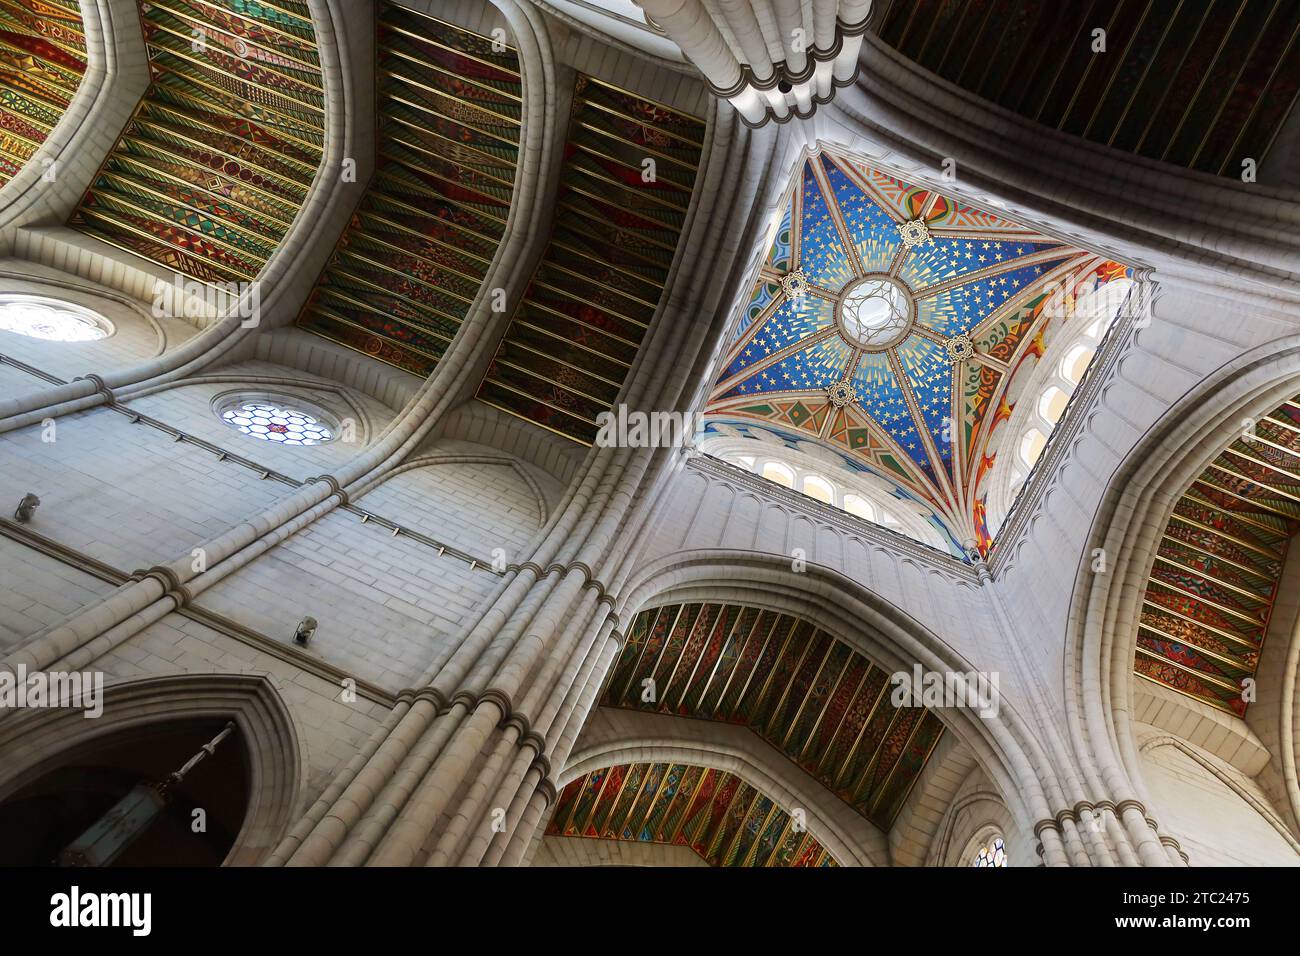 Die farbenfrohe Decke der almudena, Kathedrale in Madrid, Spanien Stockfoto